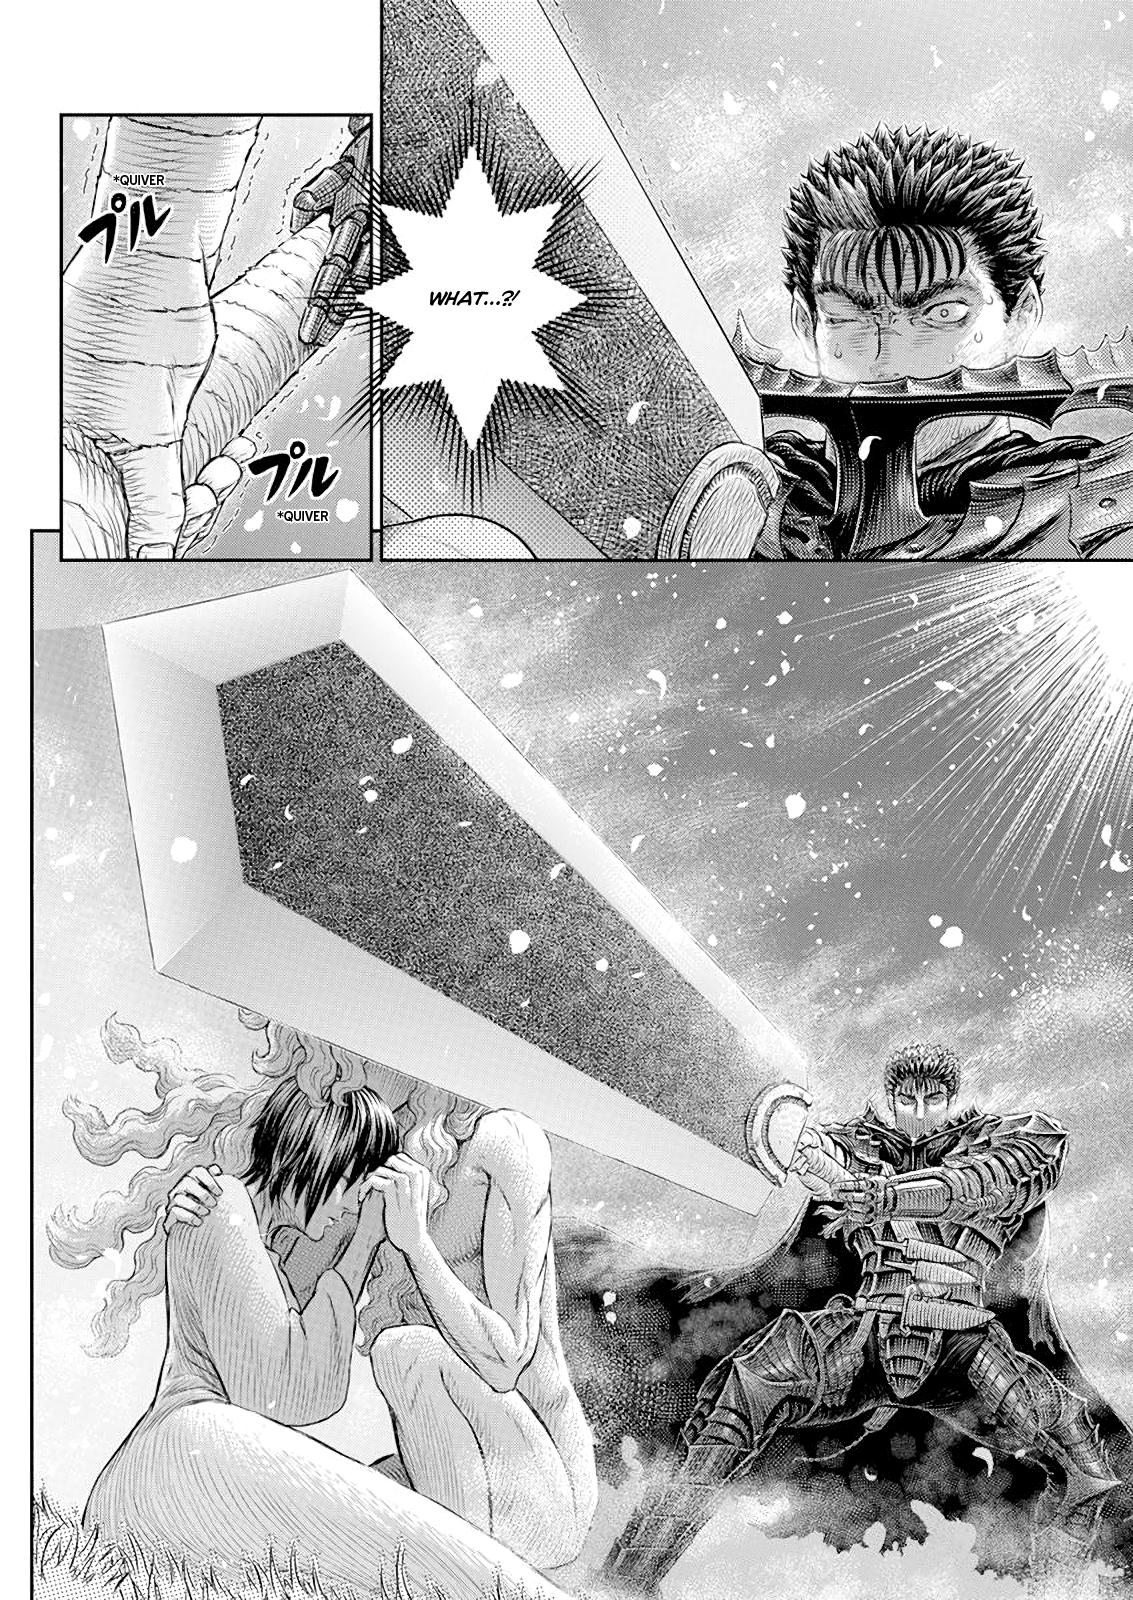 Berserk Manga Chapter 367 image 10